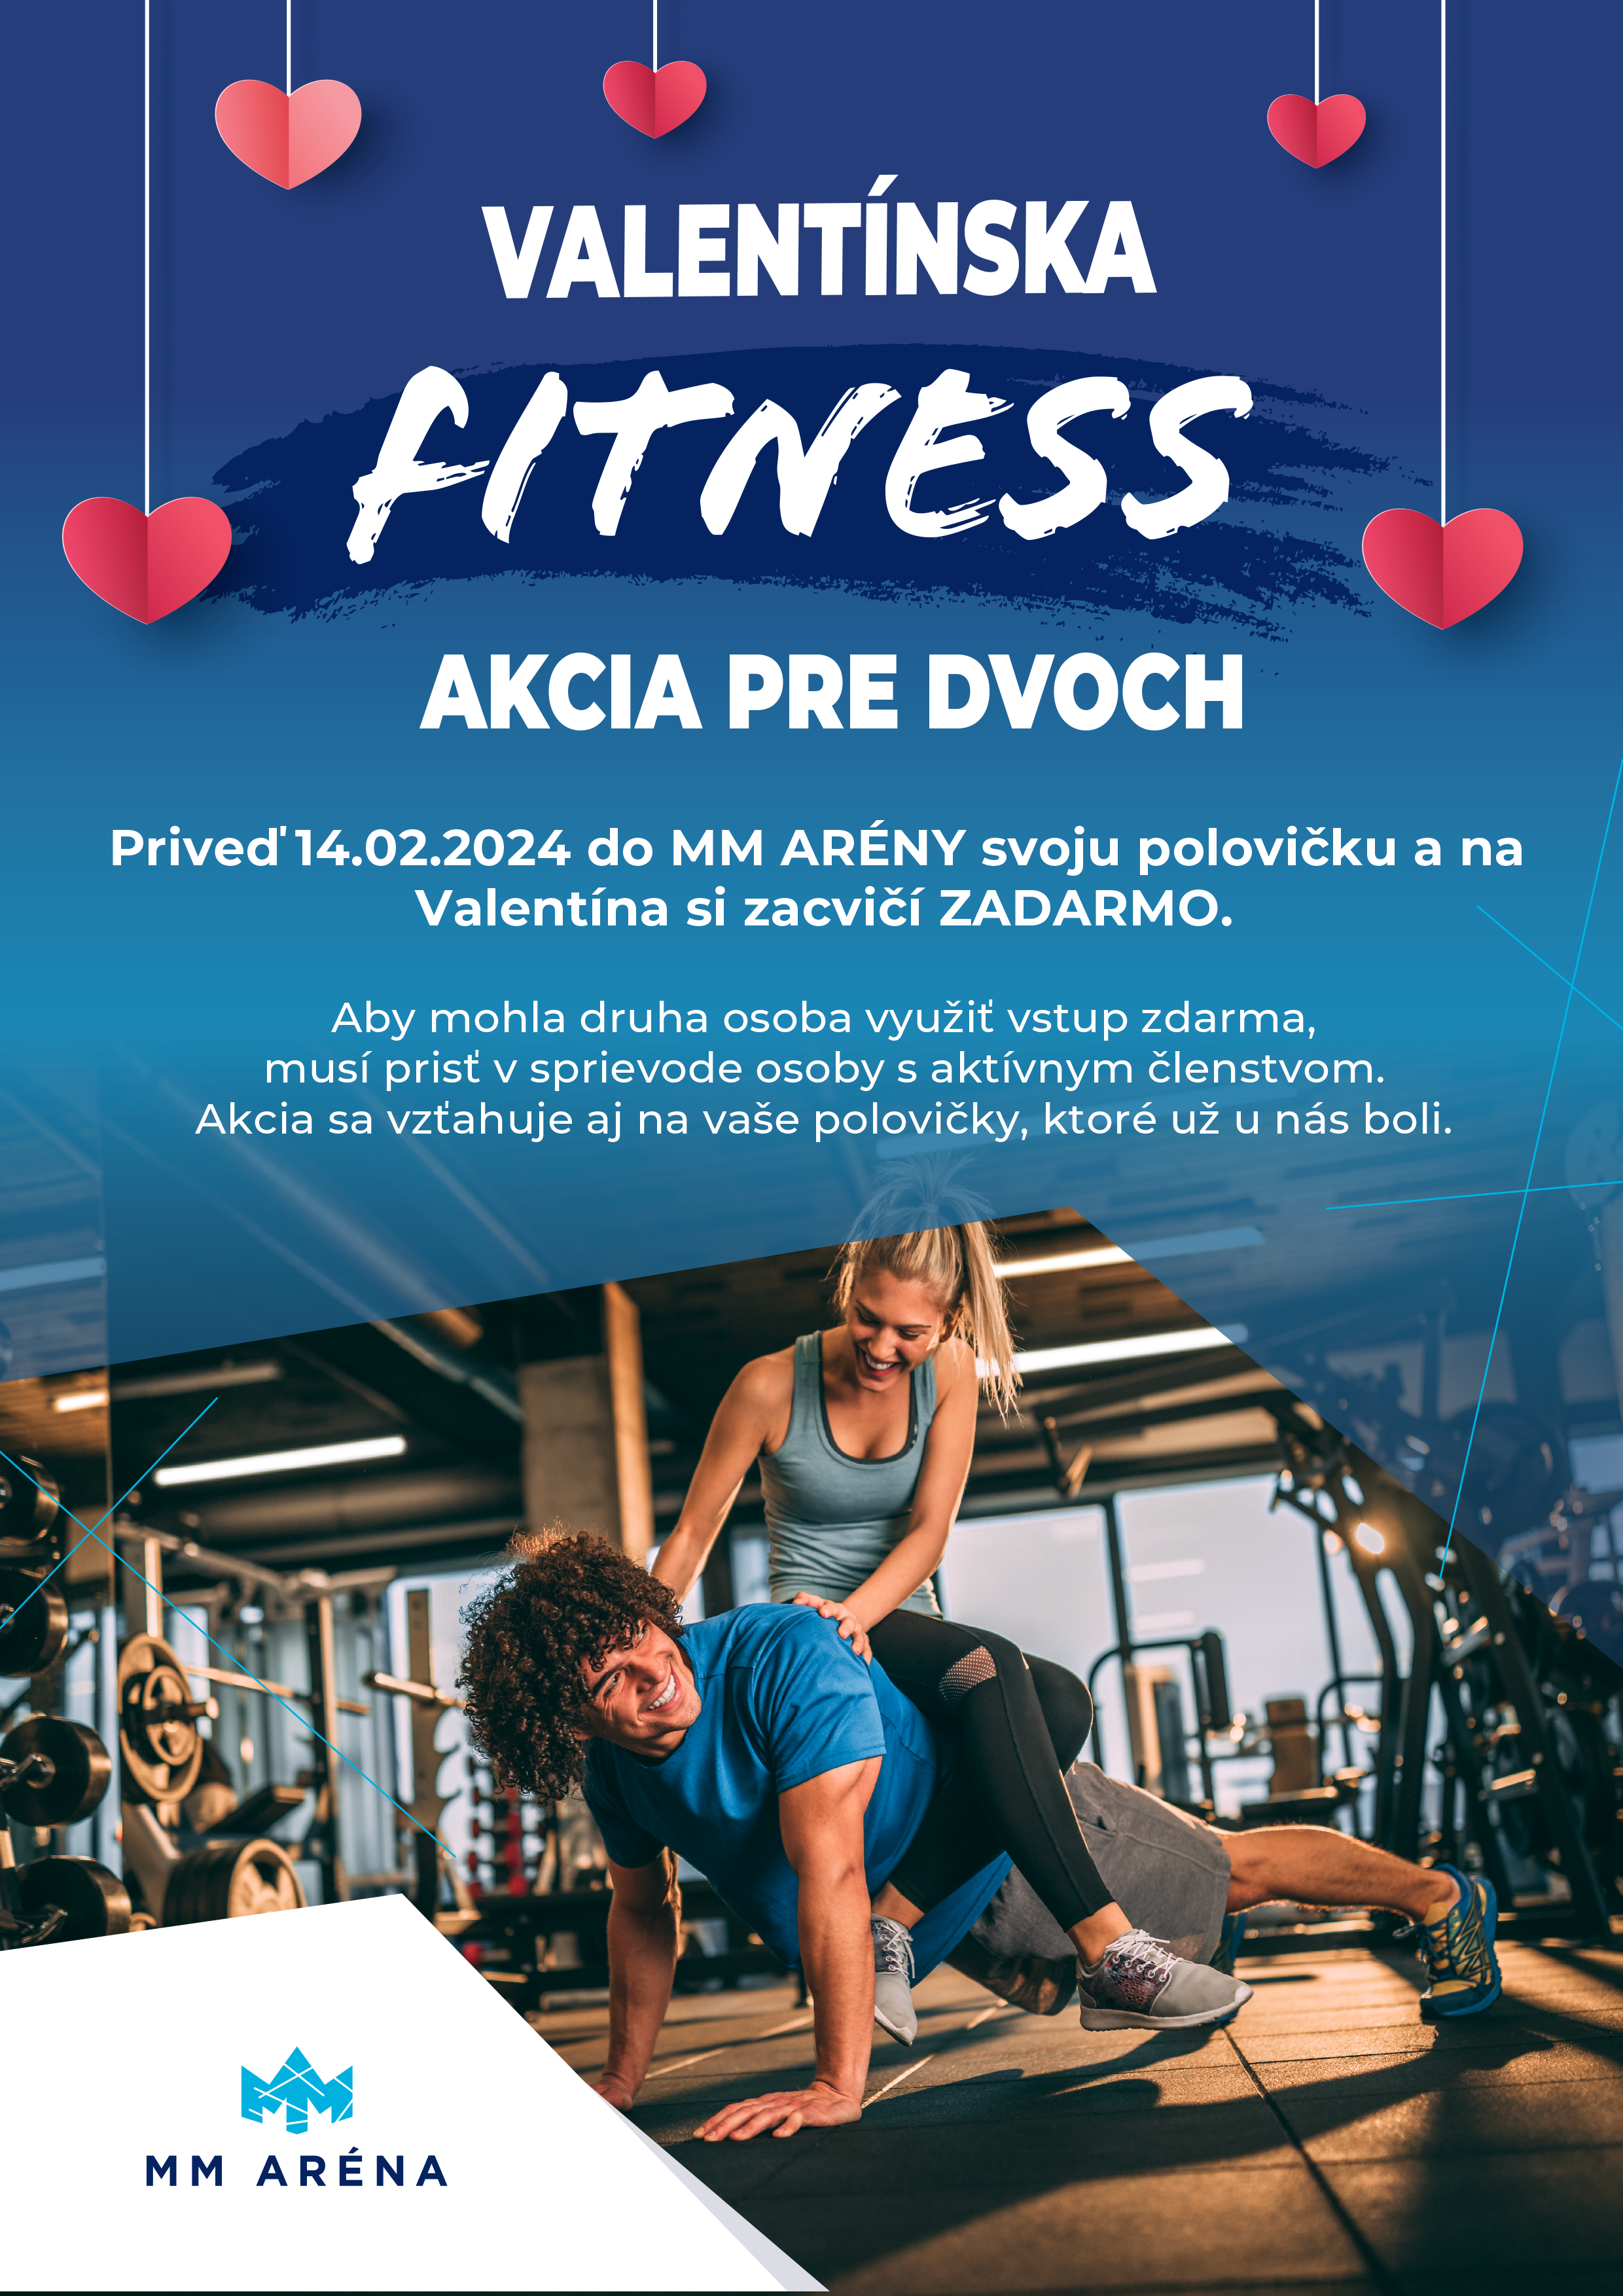 Valentinska_akcia_gym